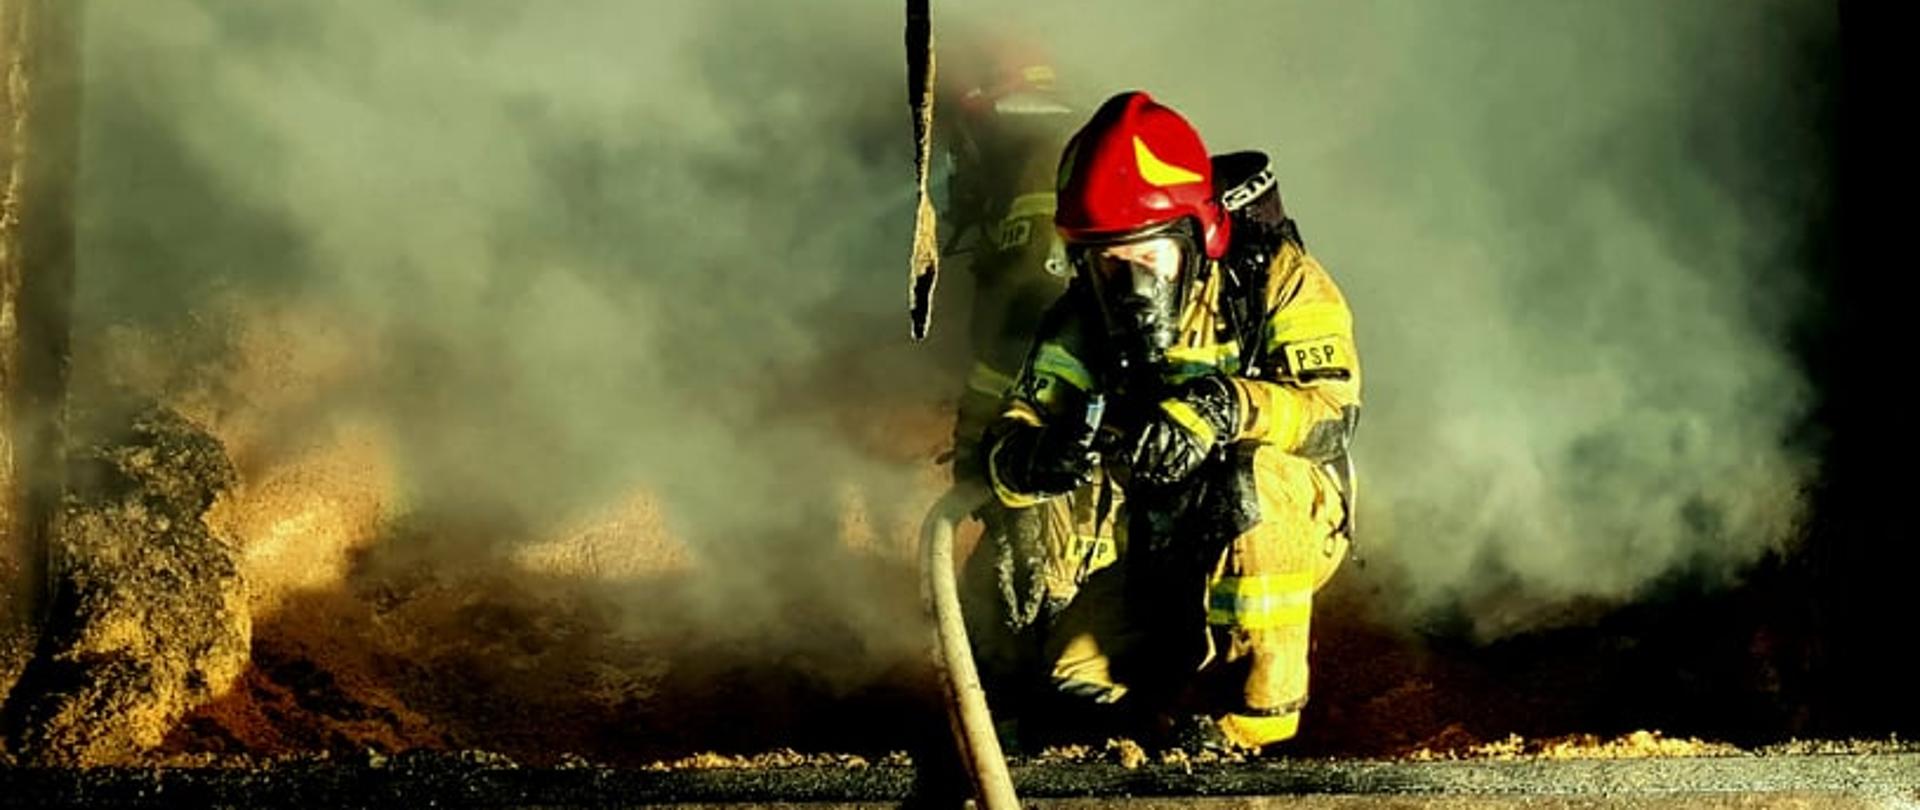 Zdjęcie przedstawia strażaków prowadzących działania gaśnicze podczas pożaru w zakładzie produkcyjnym.